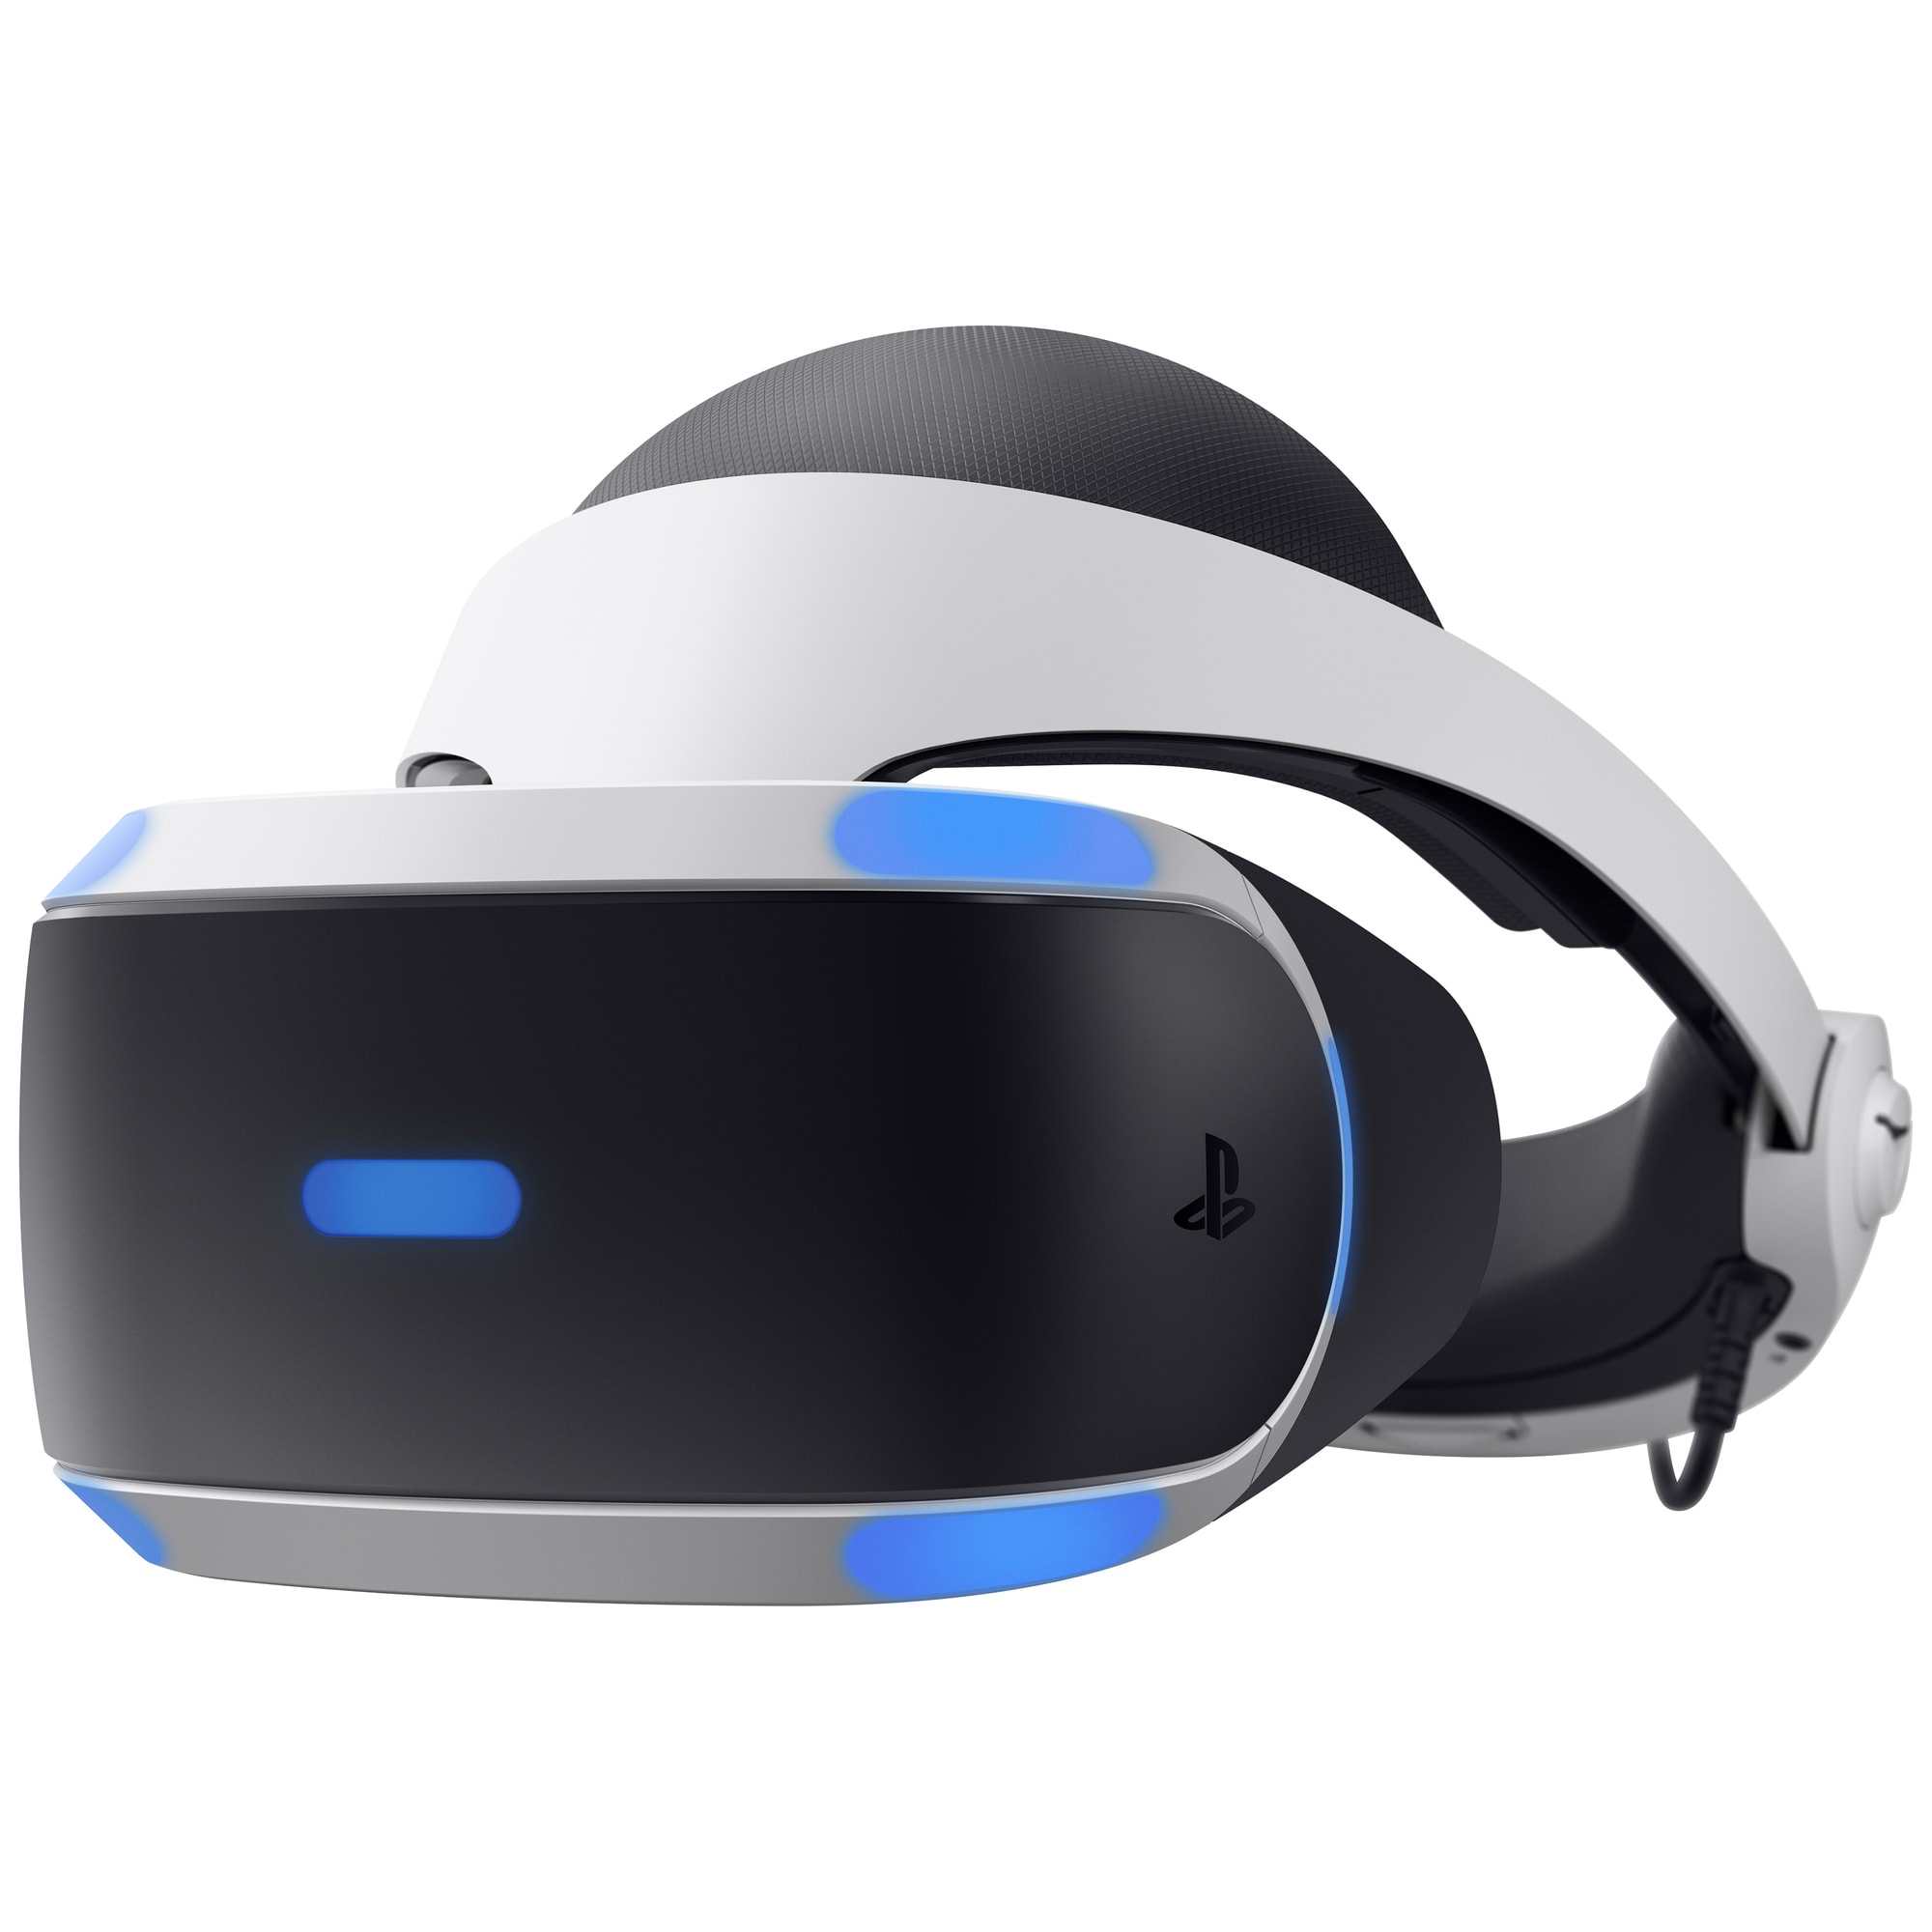 PlayStation VR headset 2018 + PS4 kamera och VR Worlds - Elgiganten